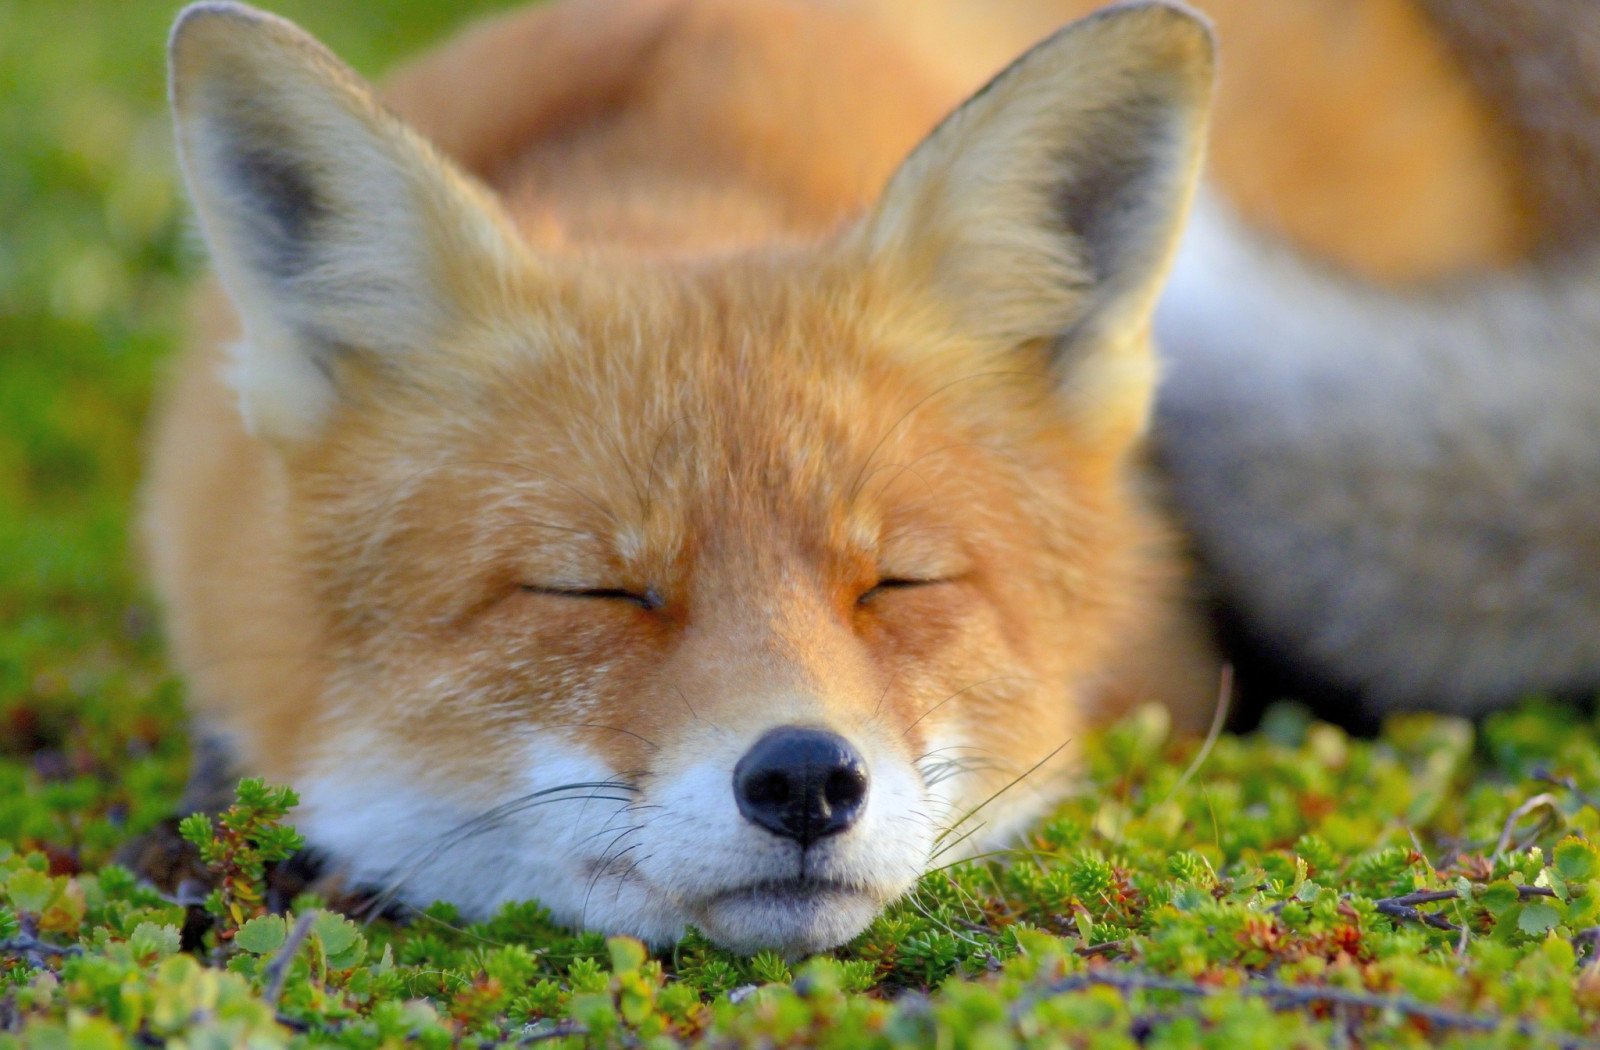 面对, 狐狸, 睡眠